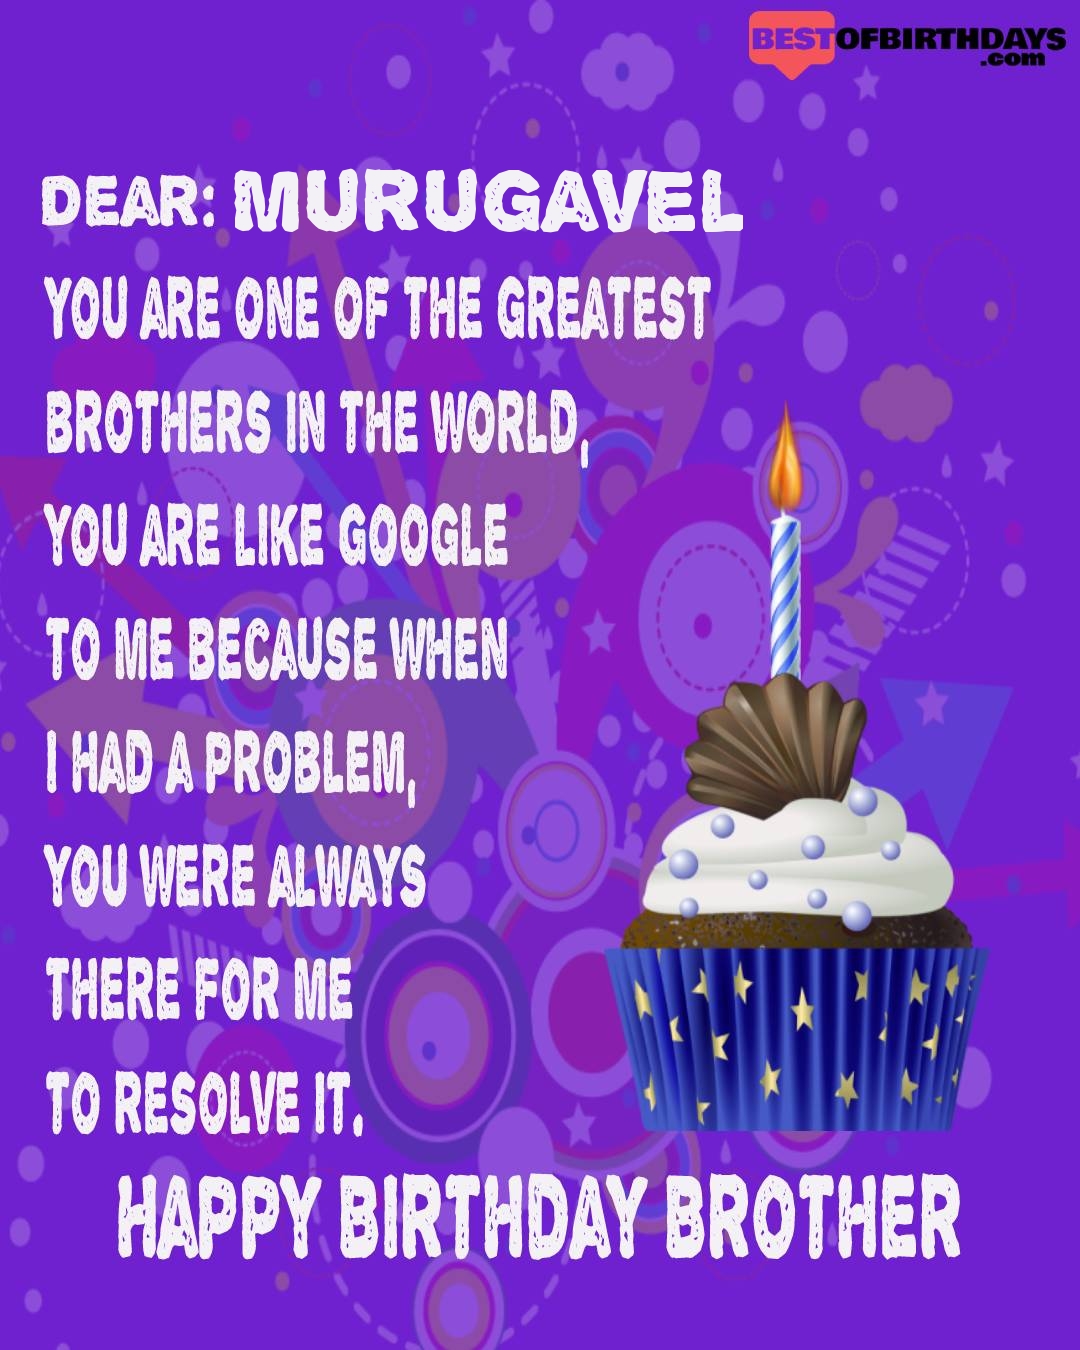 Happy birthday murugavel bhai brother bro